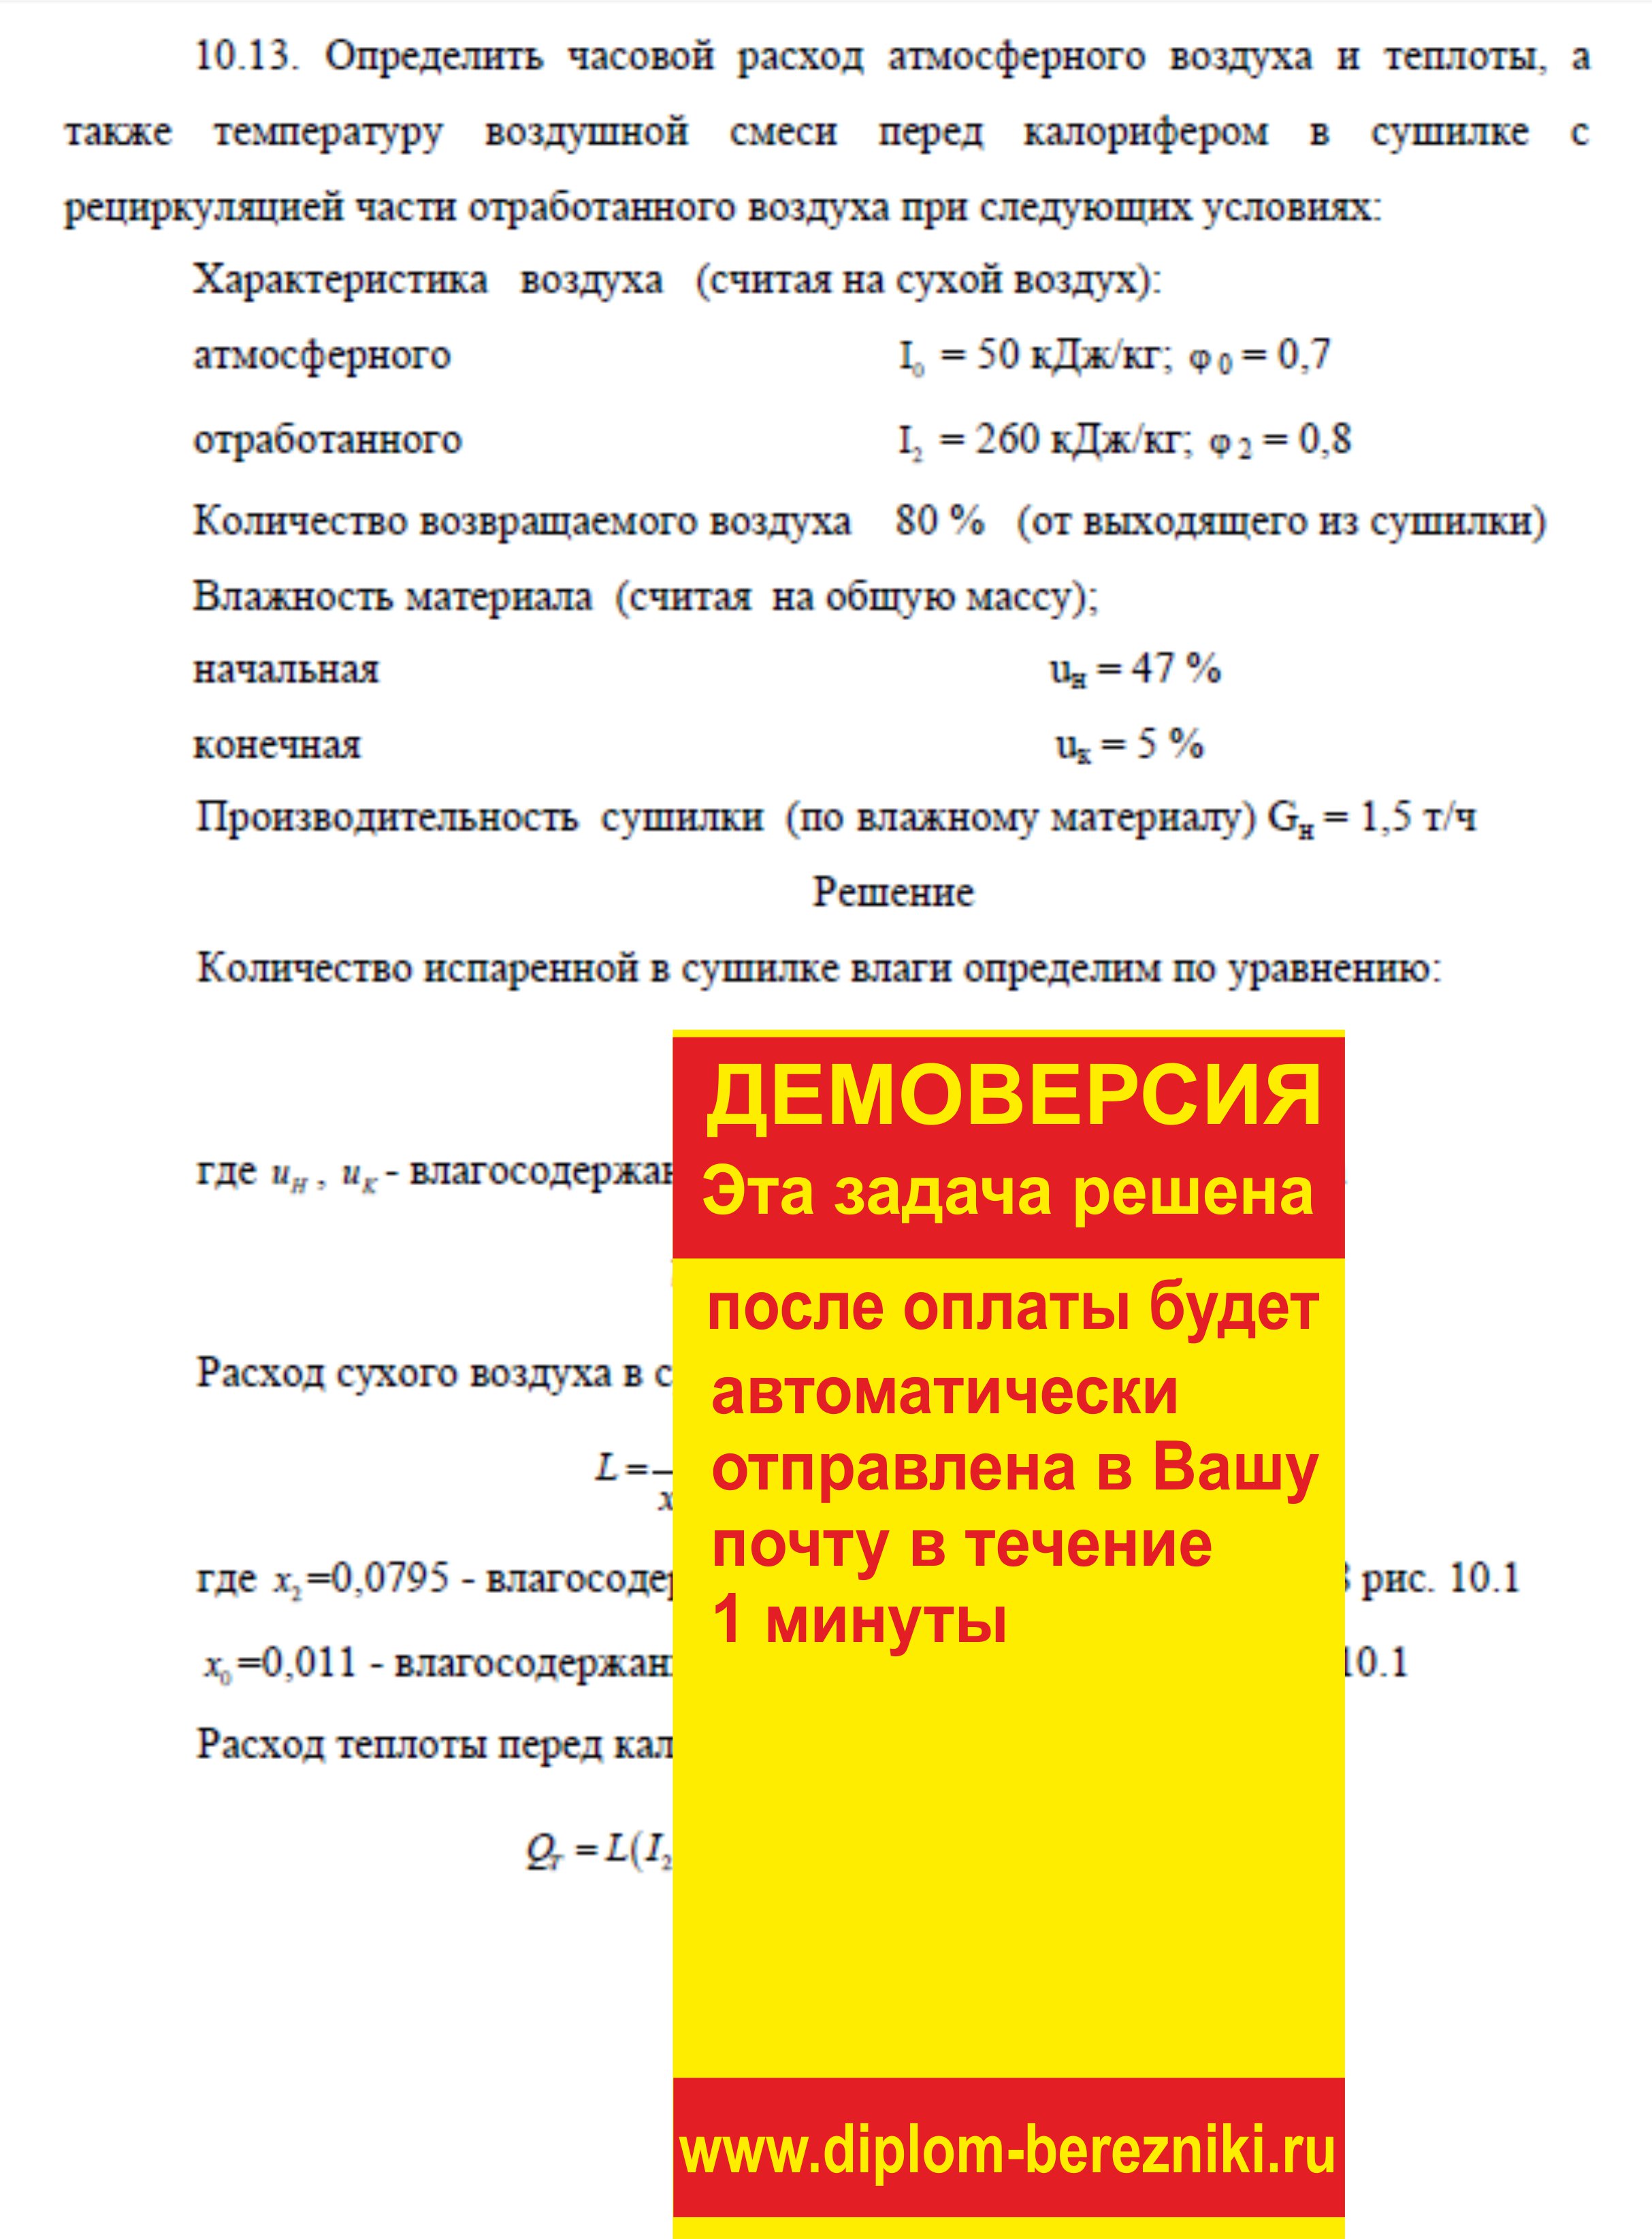 Решение задачи 10.13 по ПАХТ из задачника Павлова Романкова Носкова